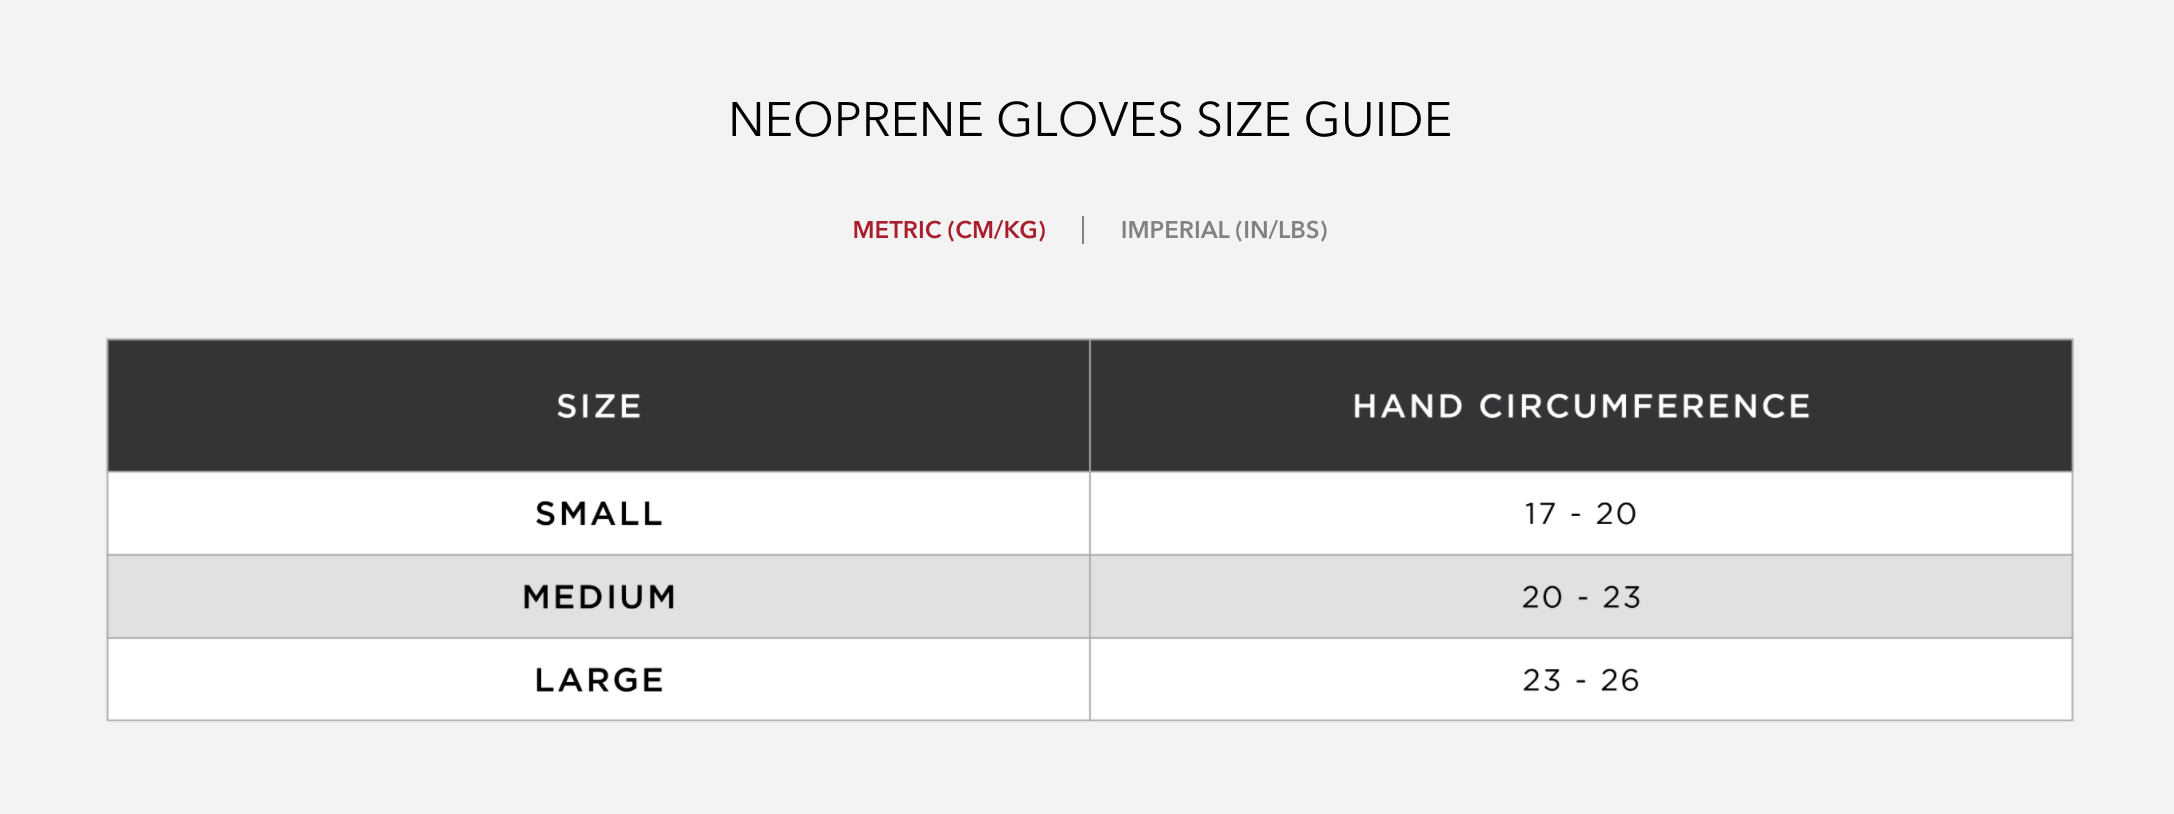 HUUB Neoprene Gloves